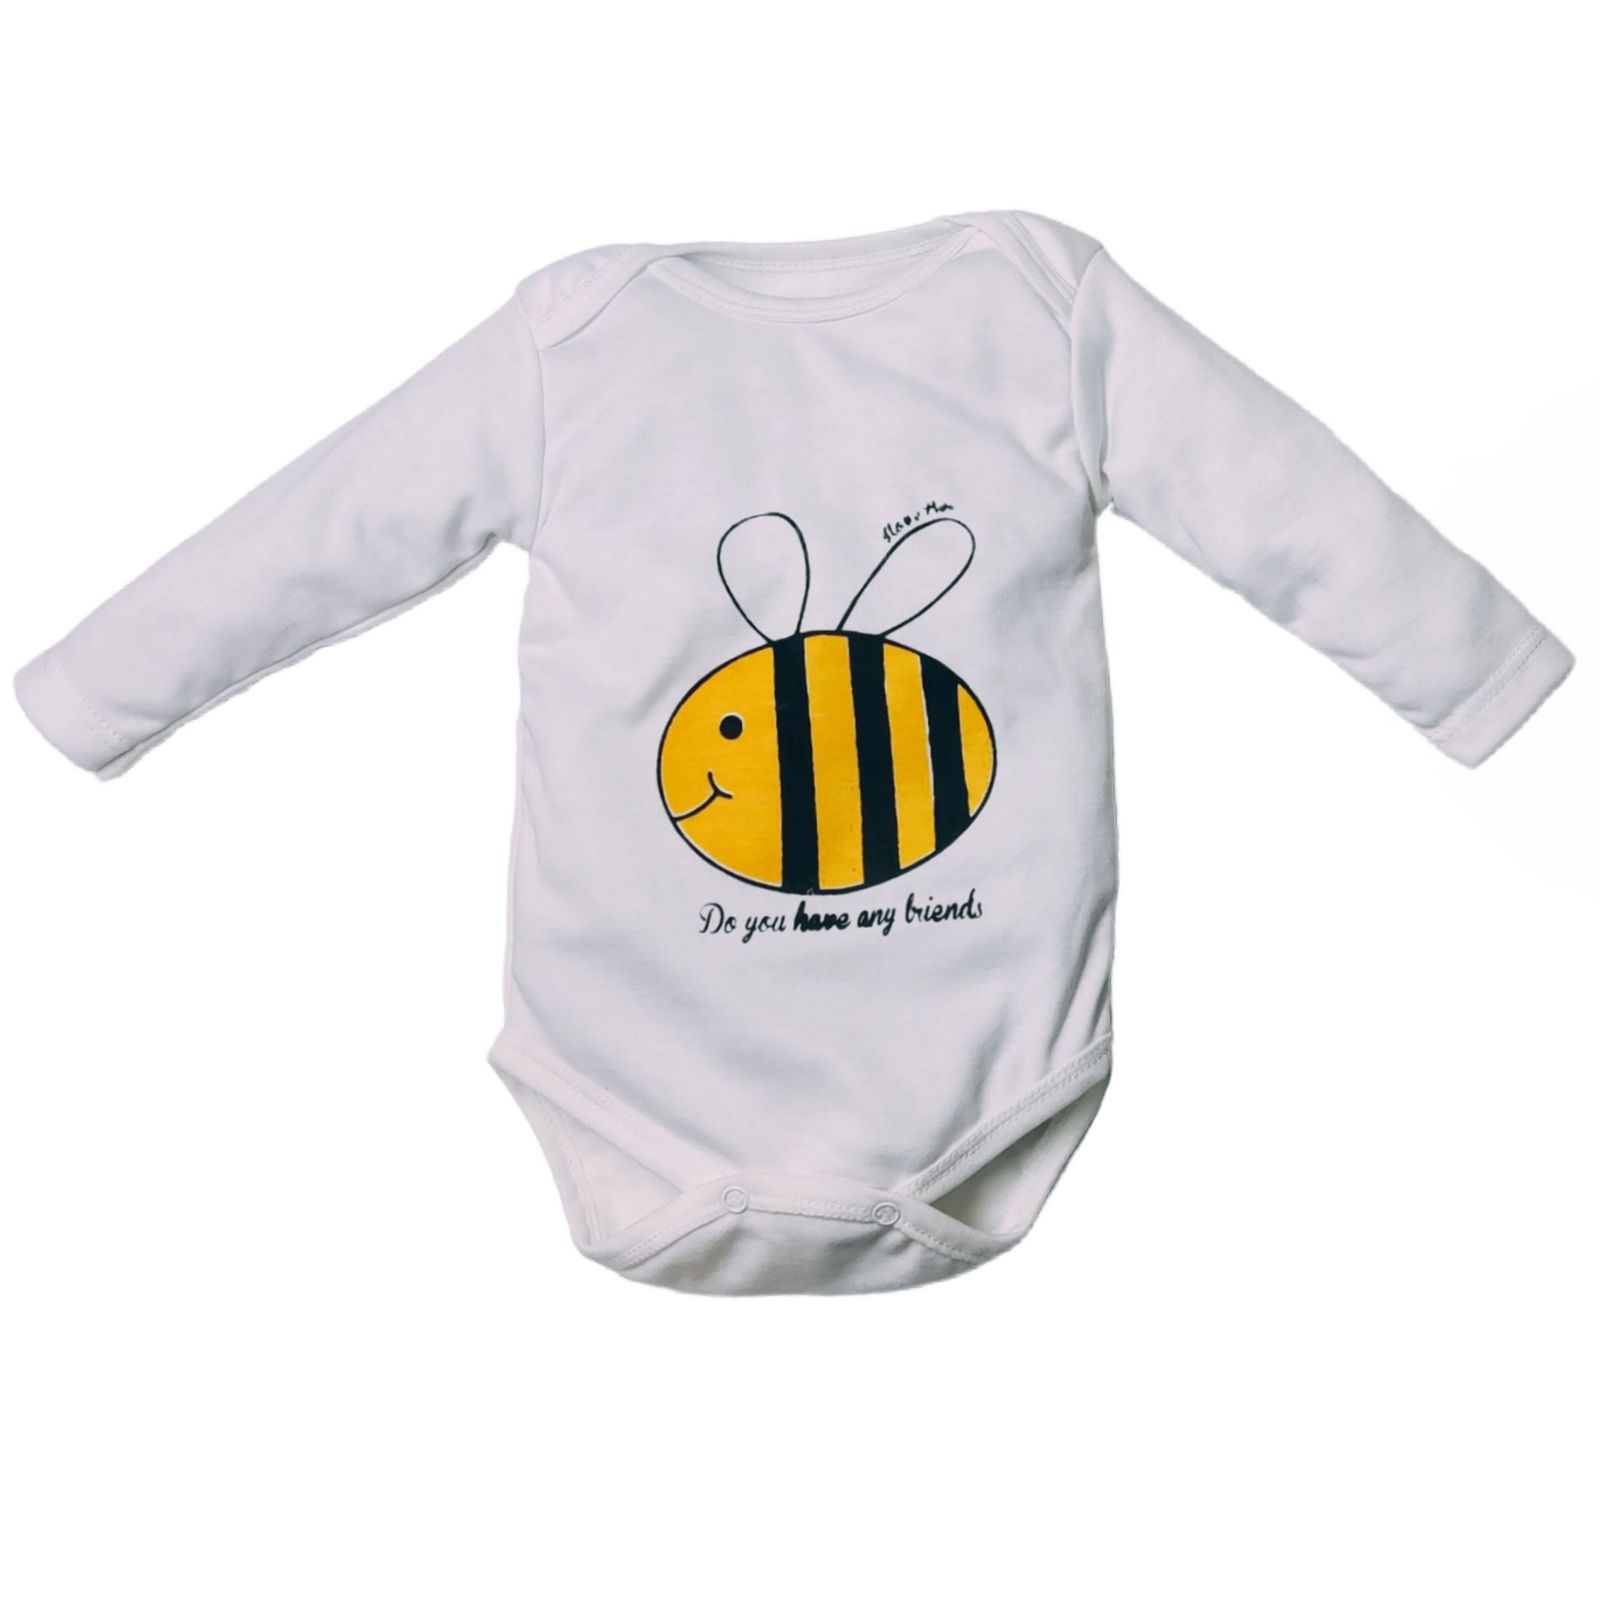 ست 3 تکه لباس نوزادی مدل زنبور کد M10 -  - 3